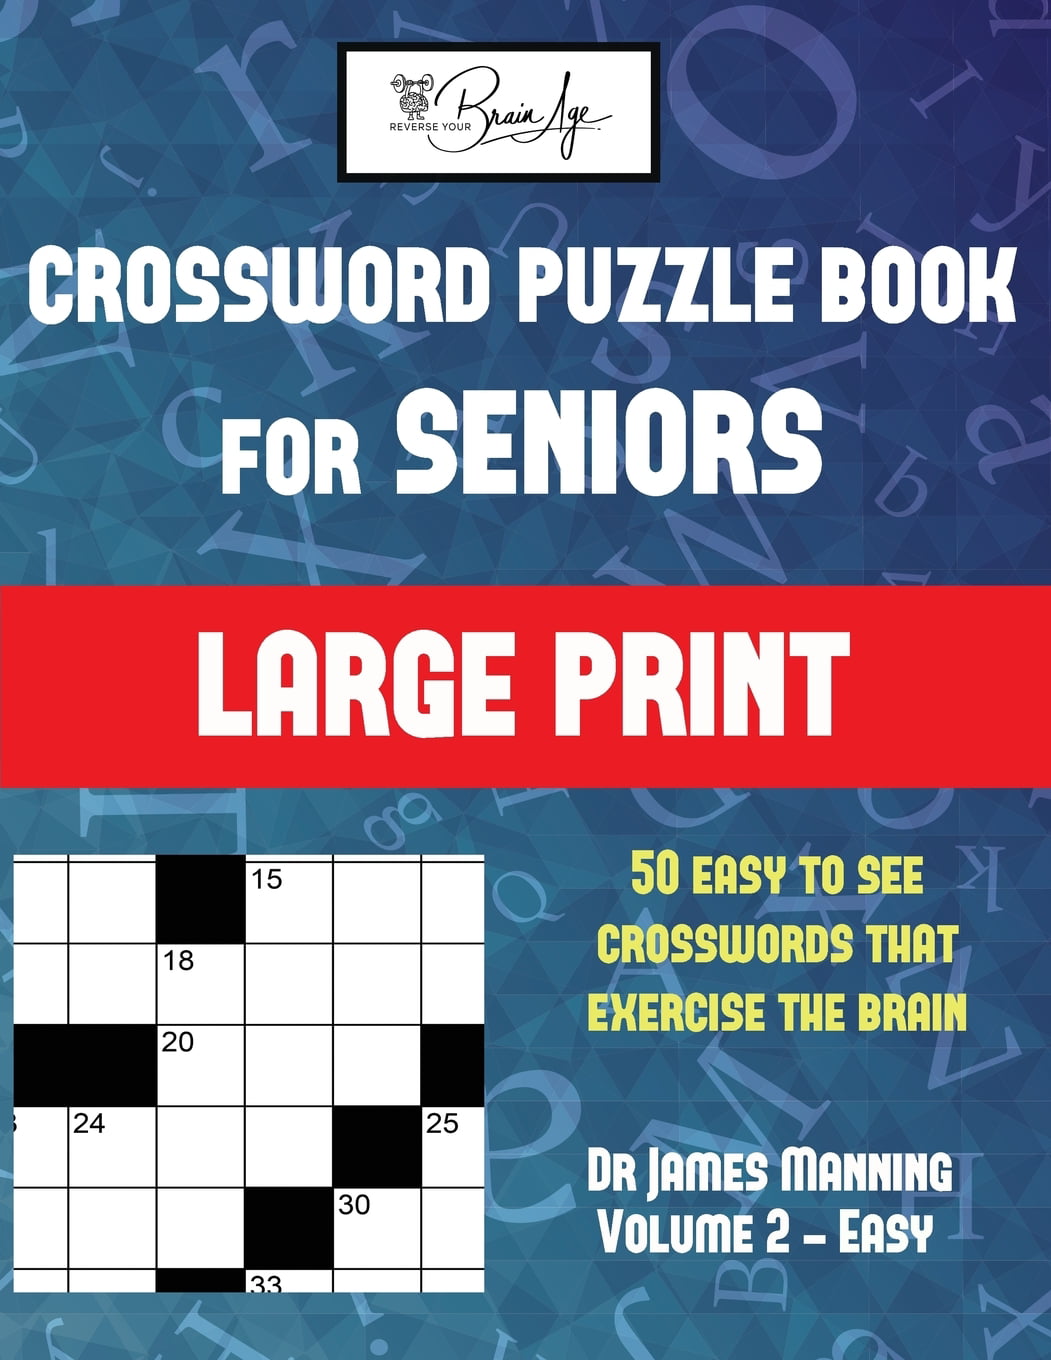 author umberto crossword clue